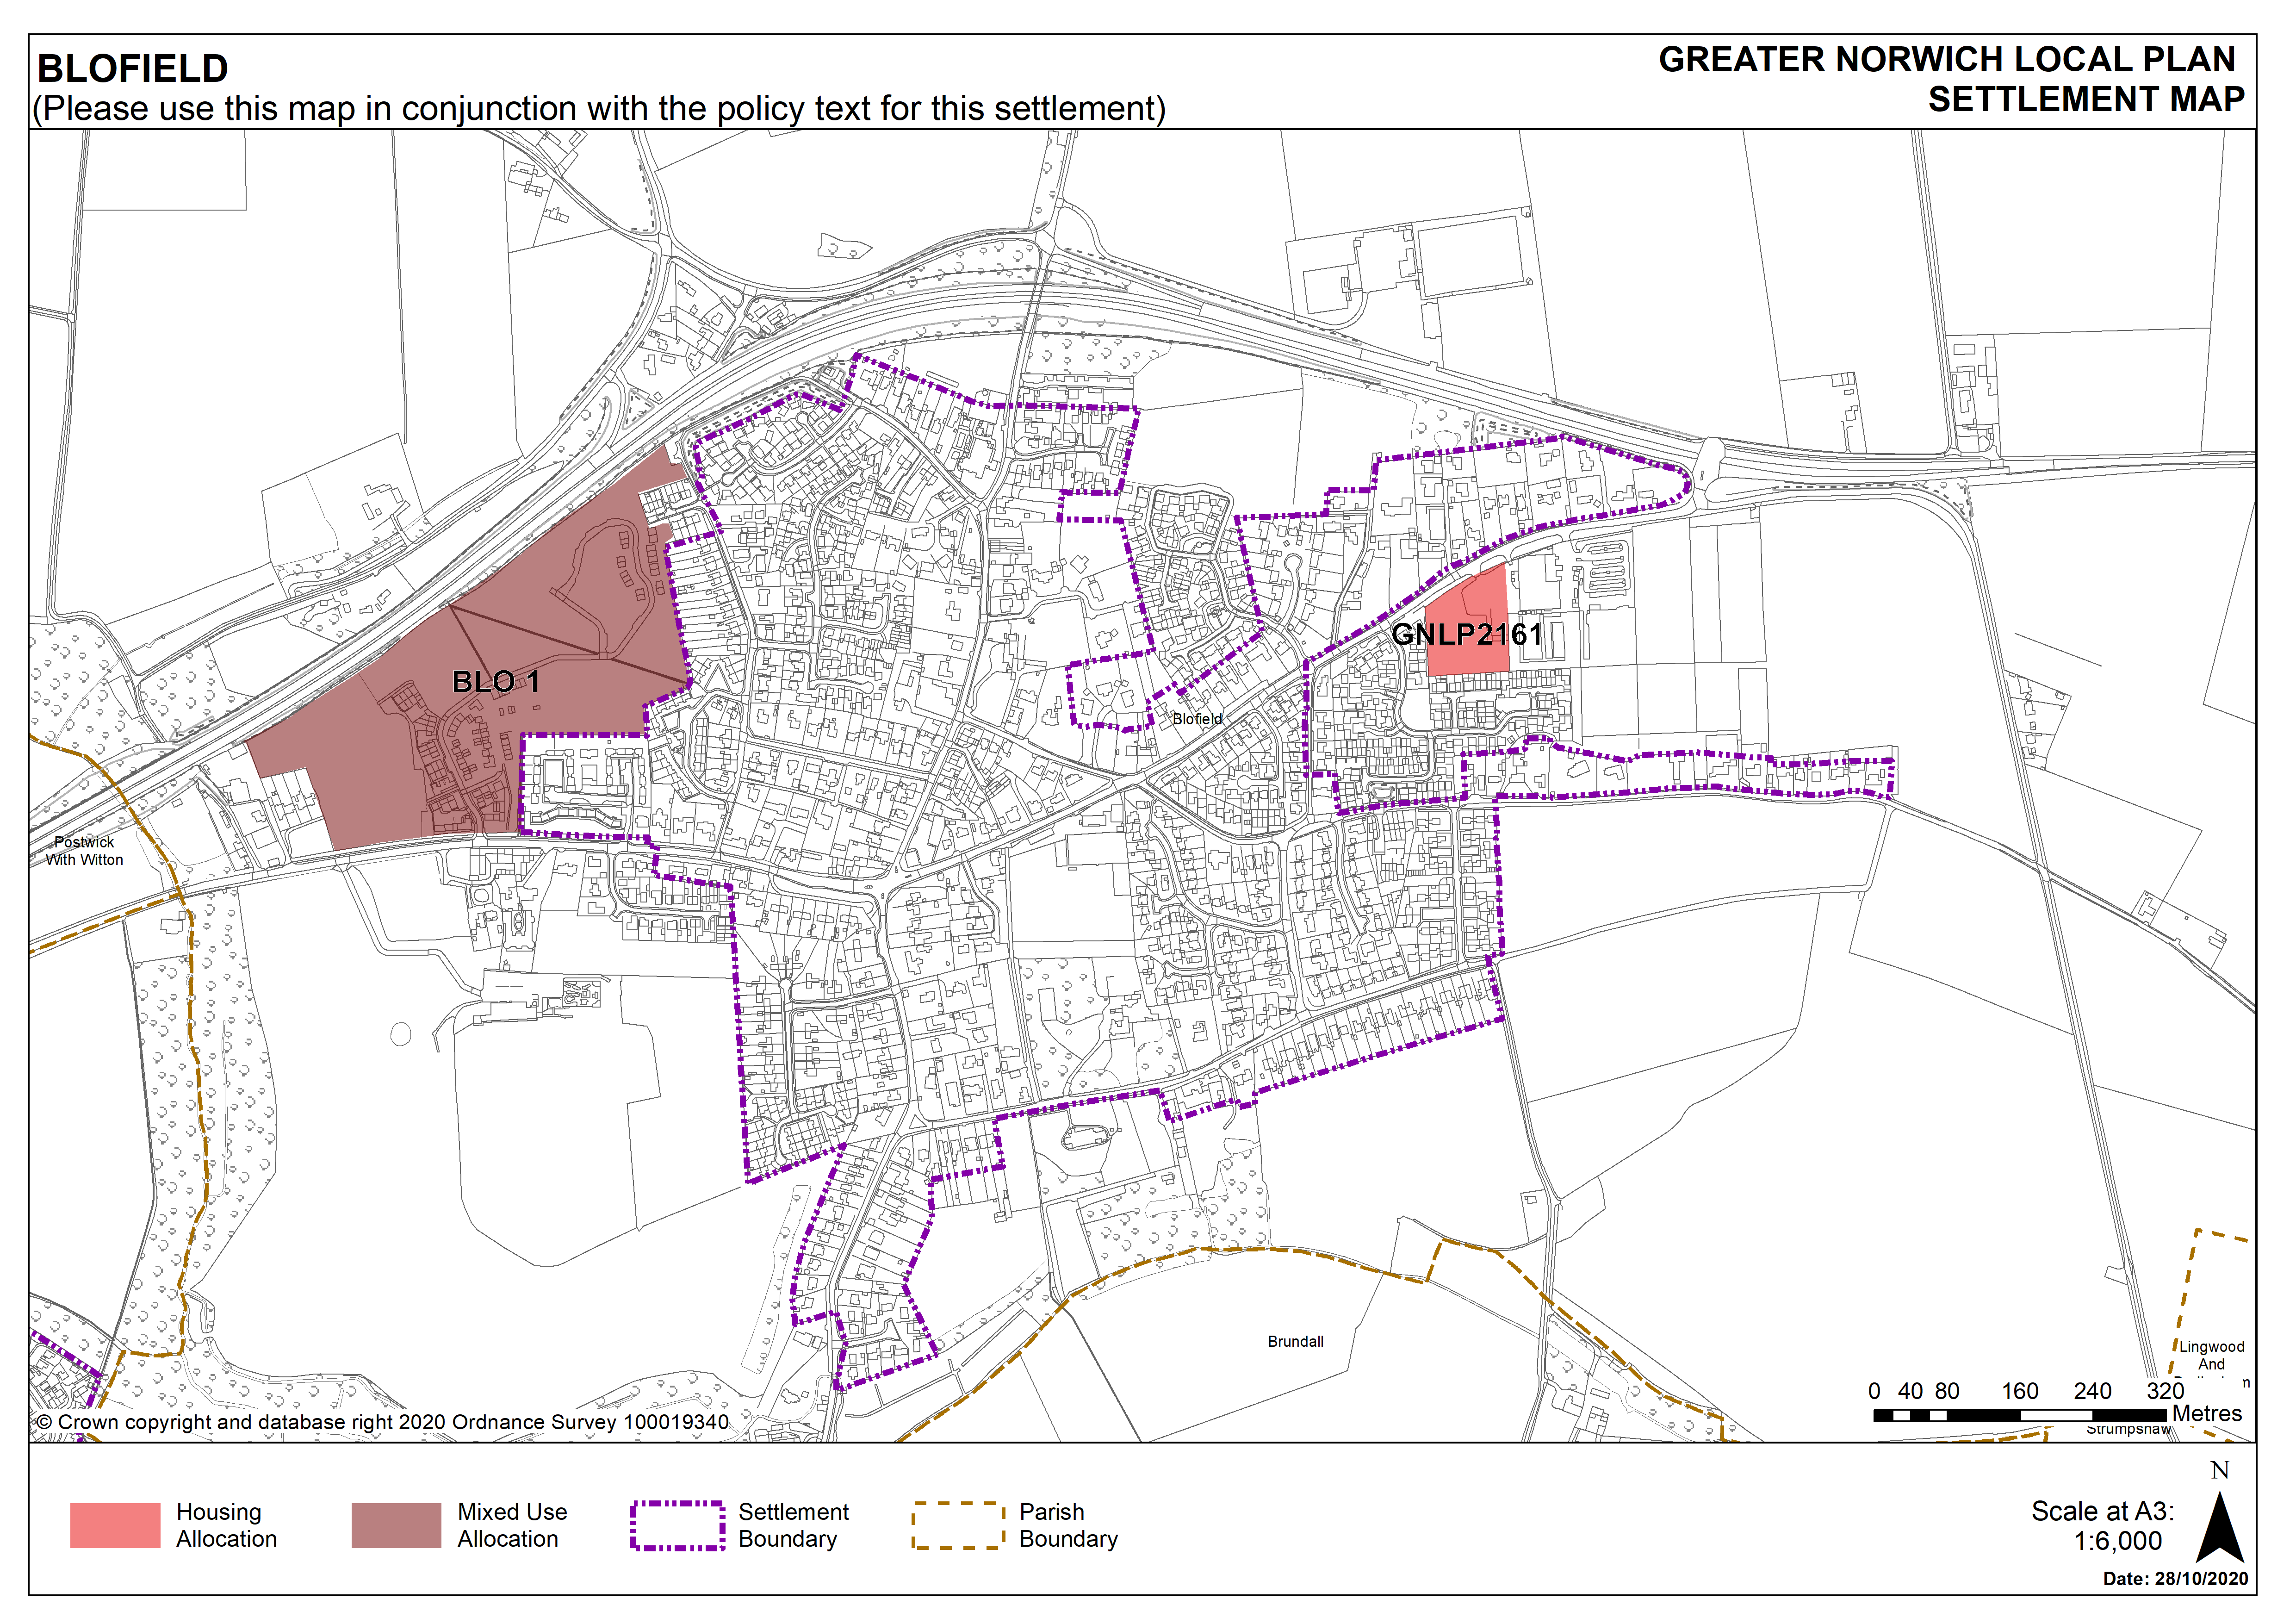 Blofield Settlement Map